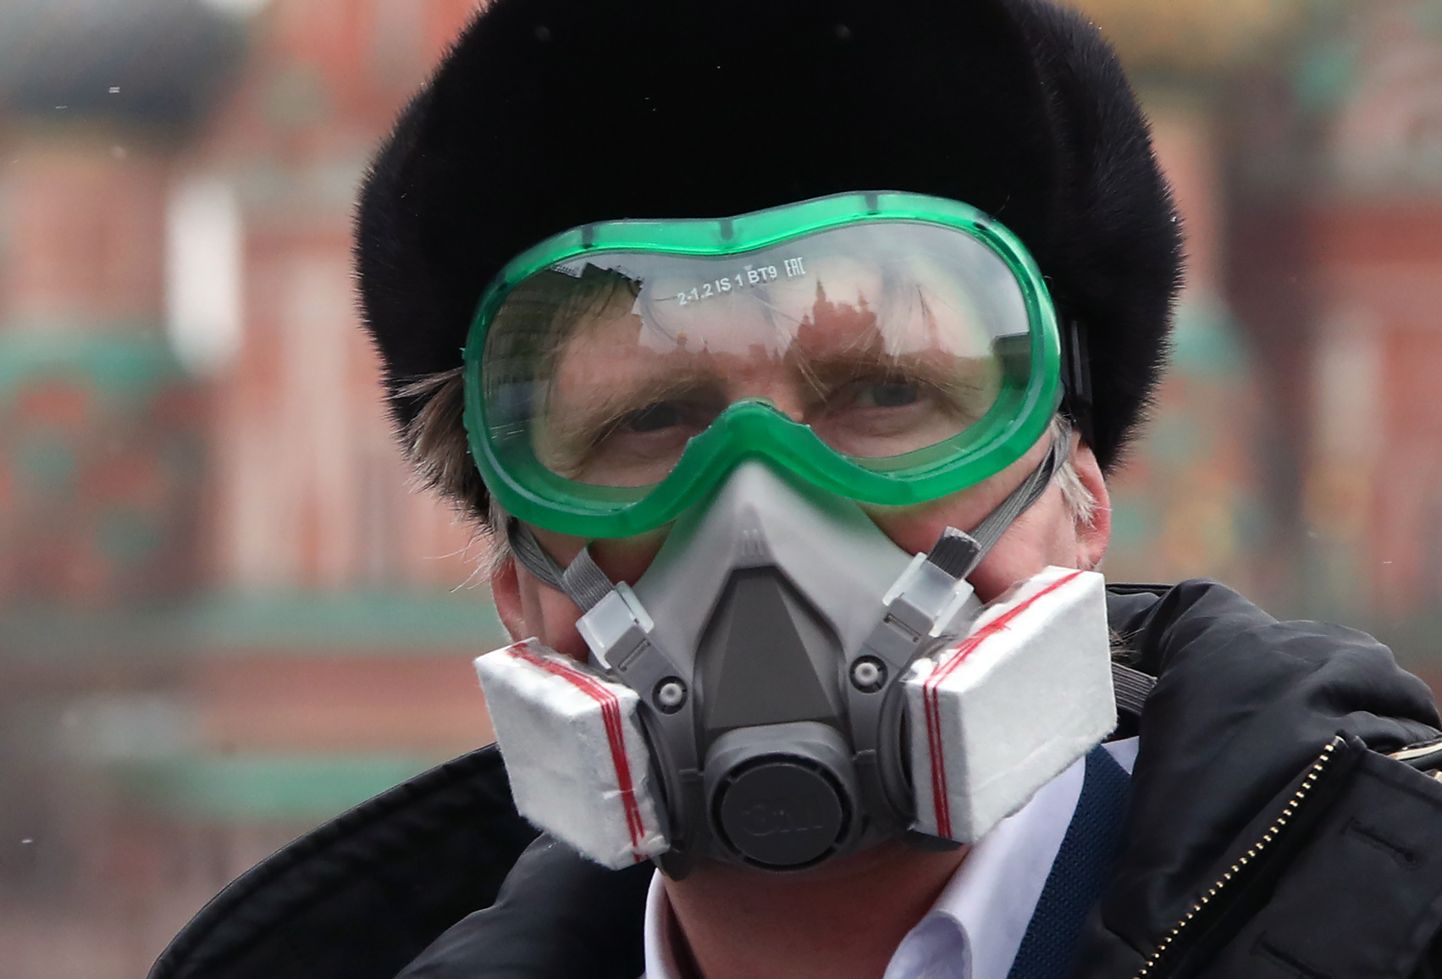 1. aprill 2020, Moskva. Venemaal kehtib koroonaviiruse piiramiseks inimestele liikumiskeeld. Rikkujaid ootab trahv kuni 50 000 rubla. Liikleja Punasel väljakul kannab respiraatorit.